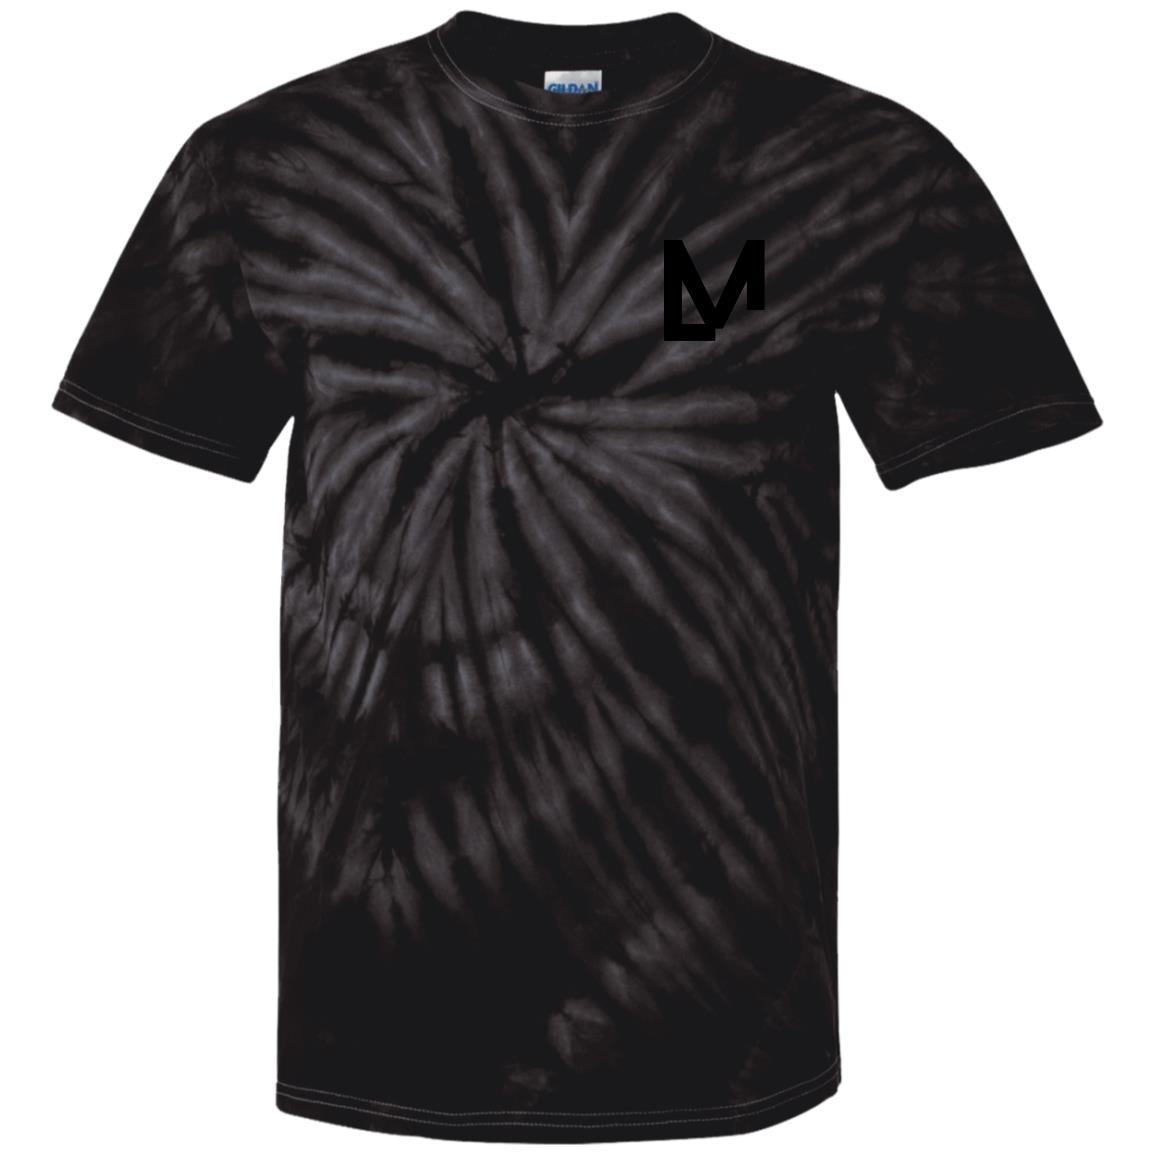 LM Premium Spider Tie Dye T-Shirt